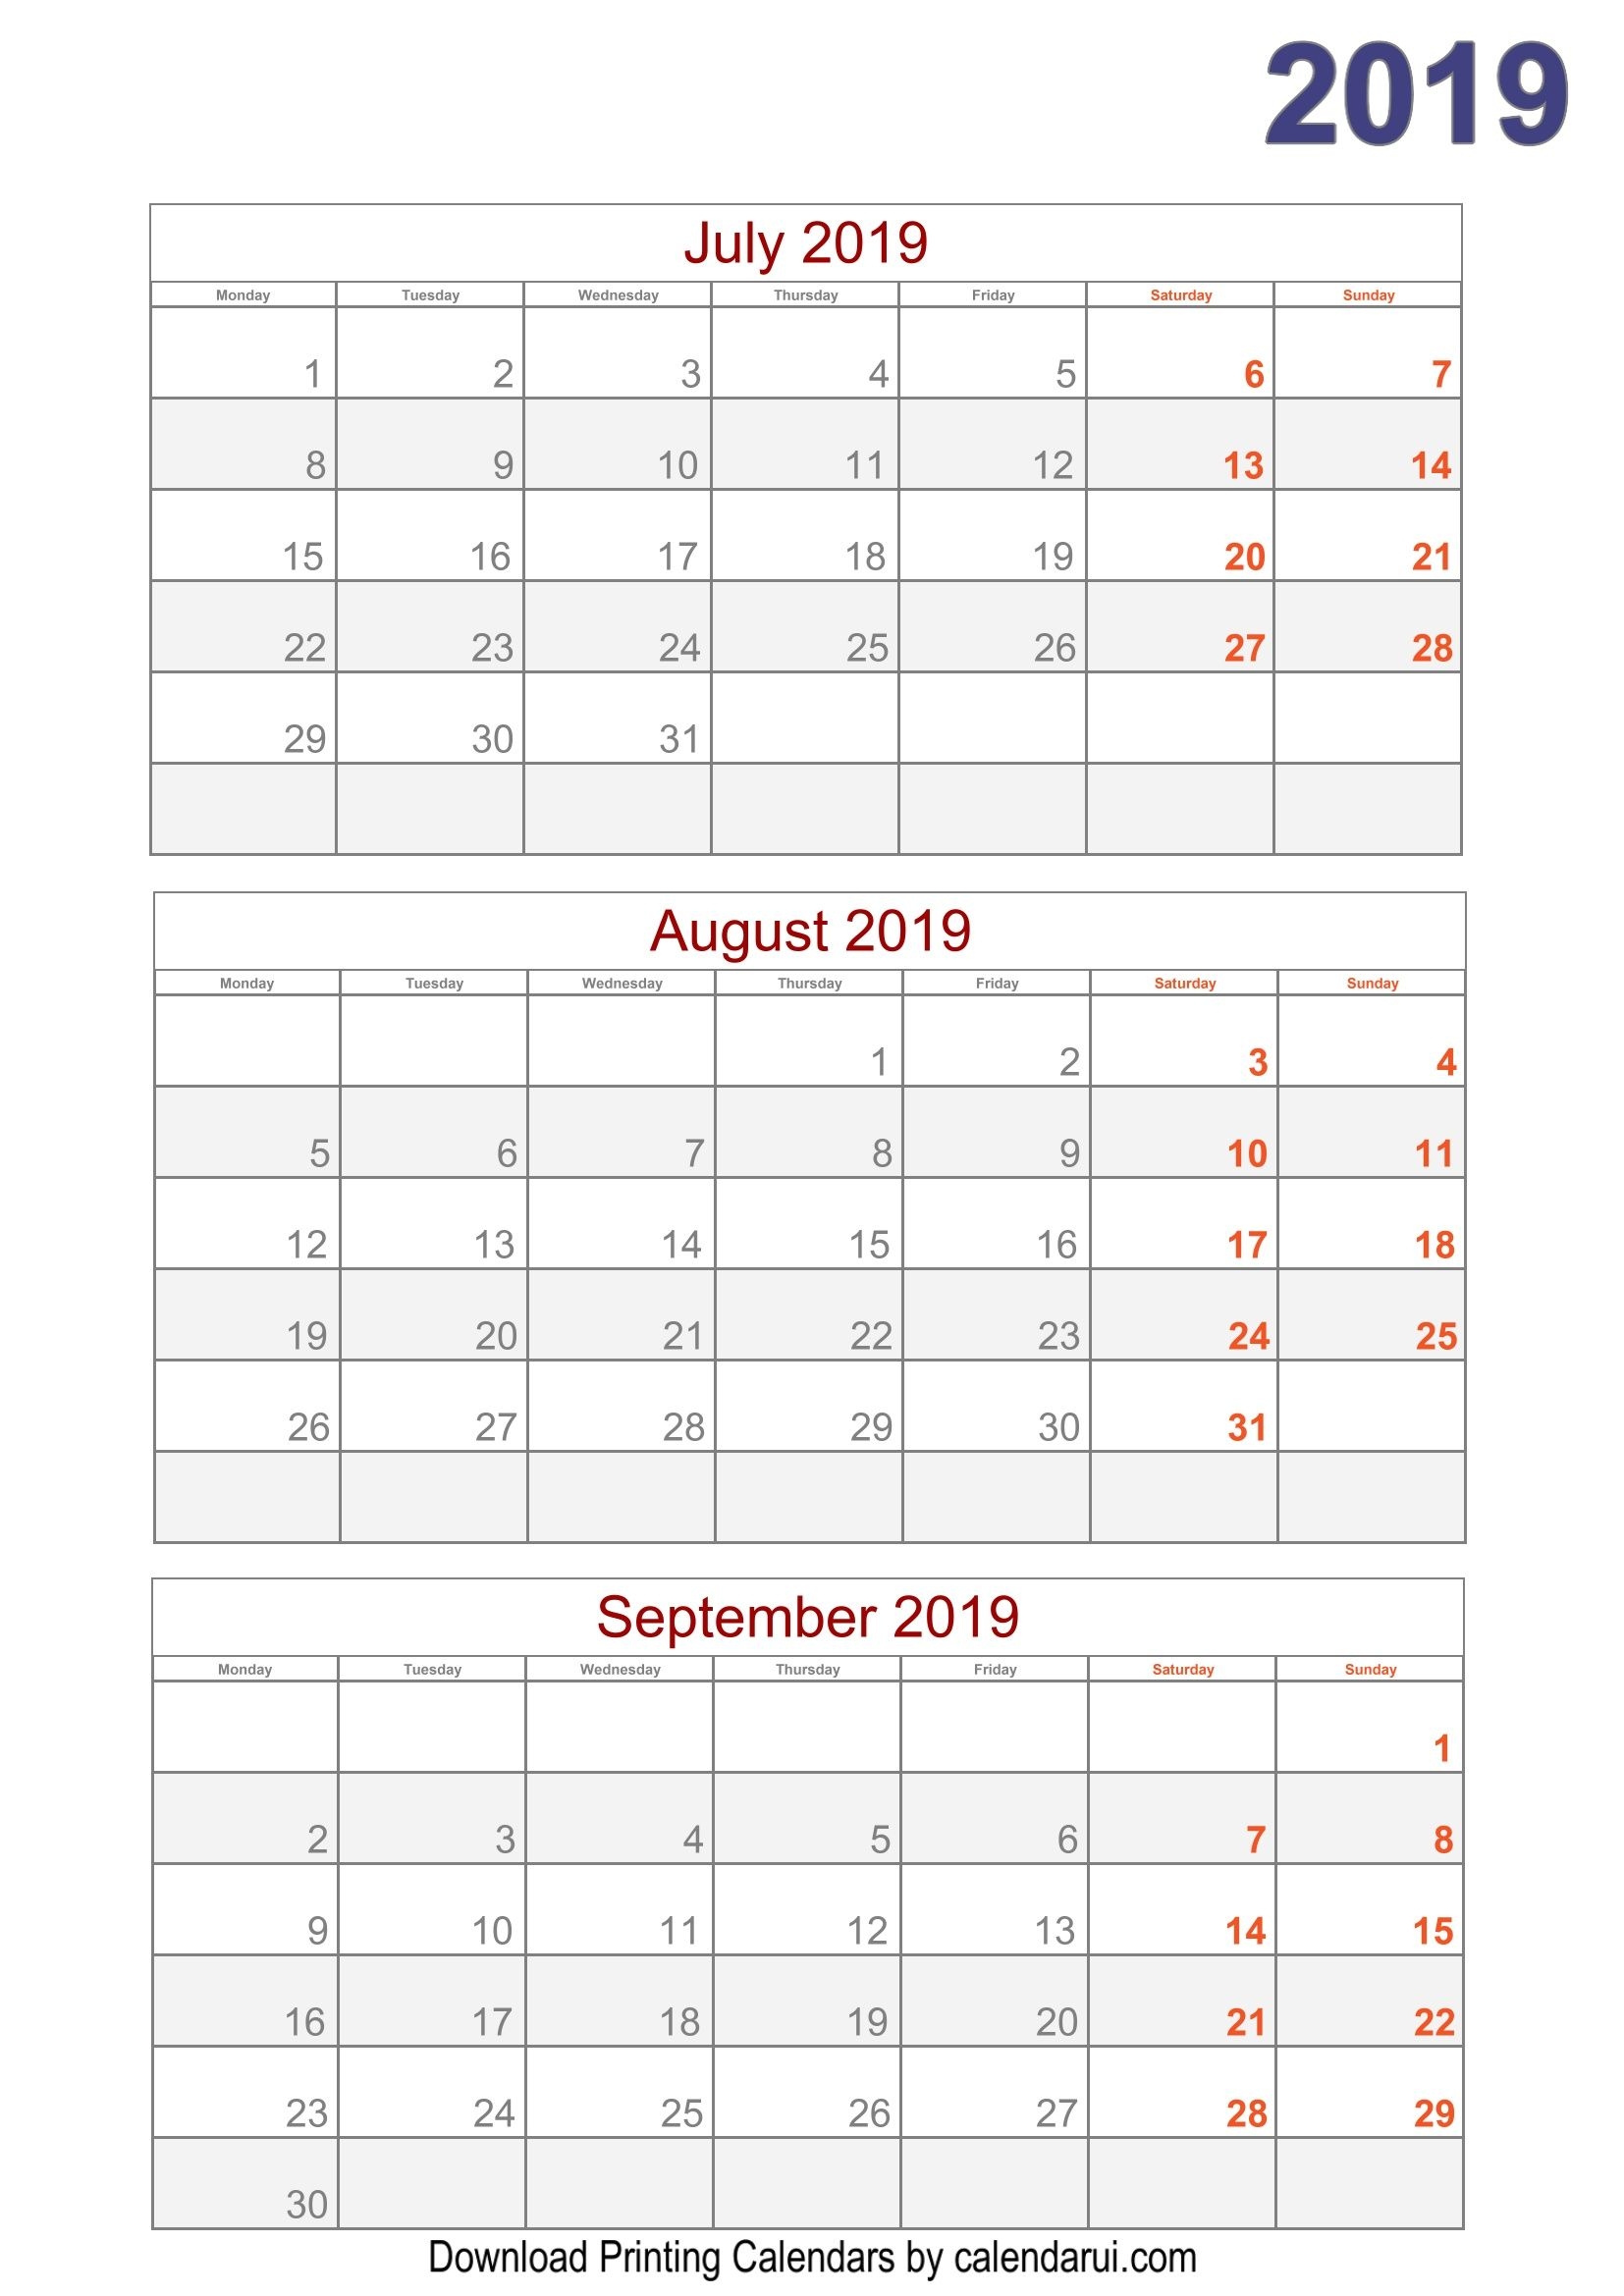 Download 2019 Quarterly Calendar Printable For Free Calendar